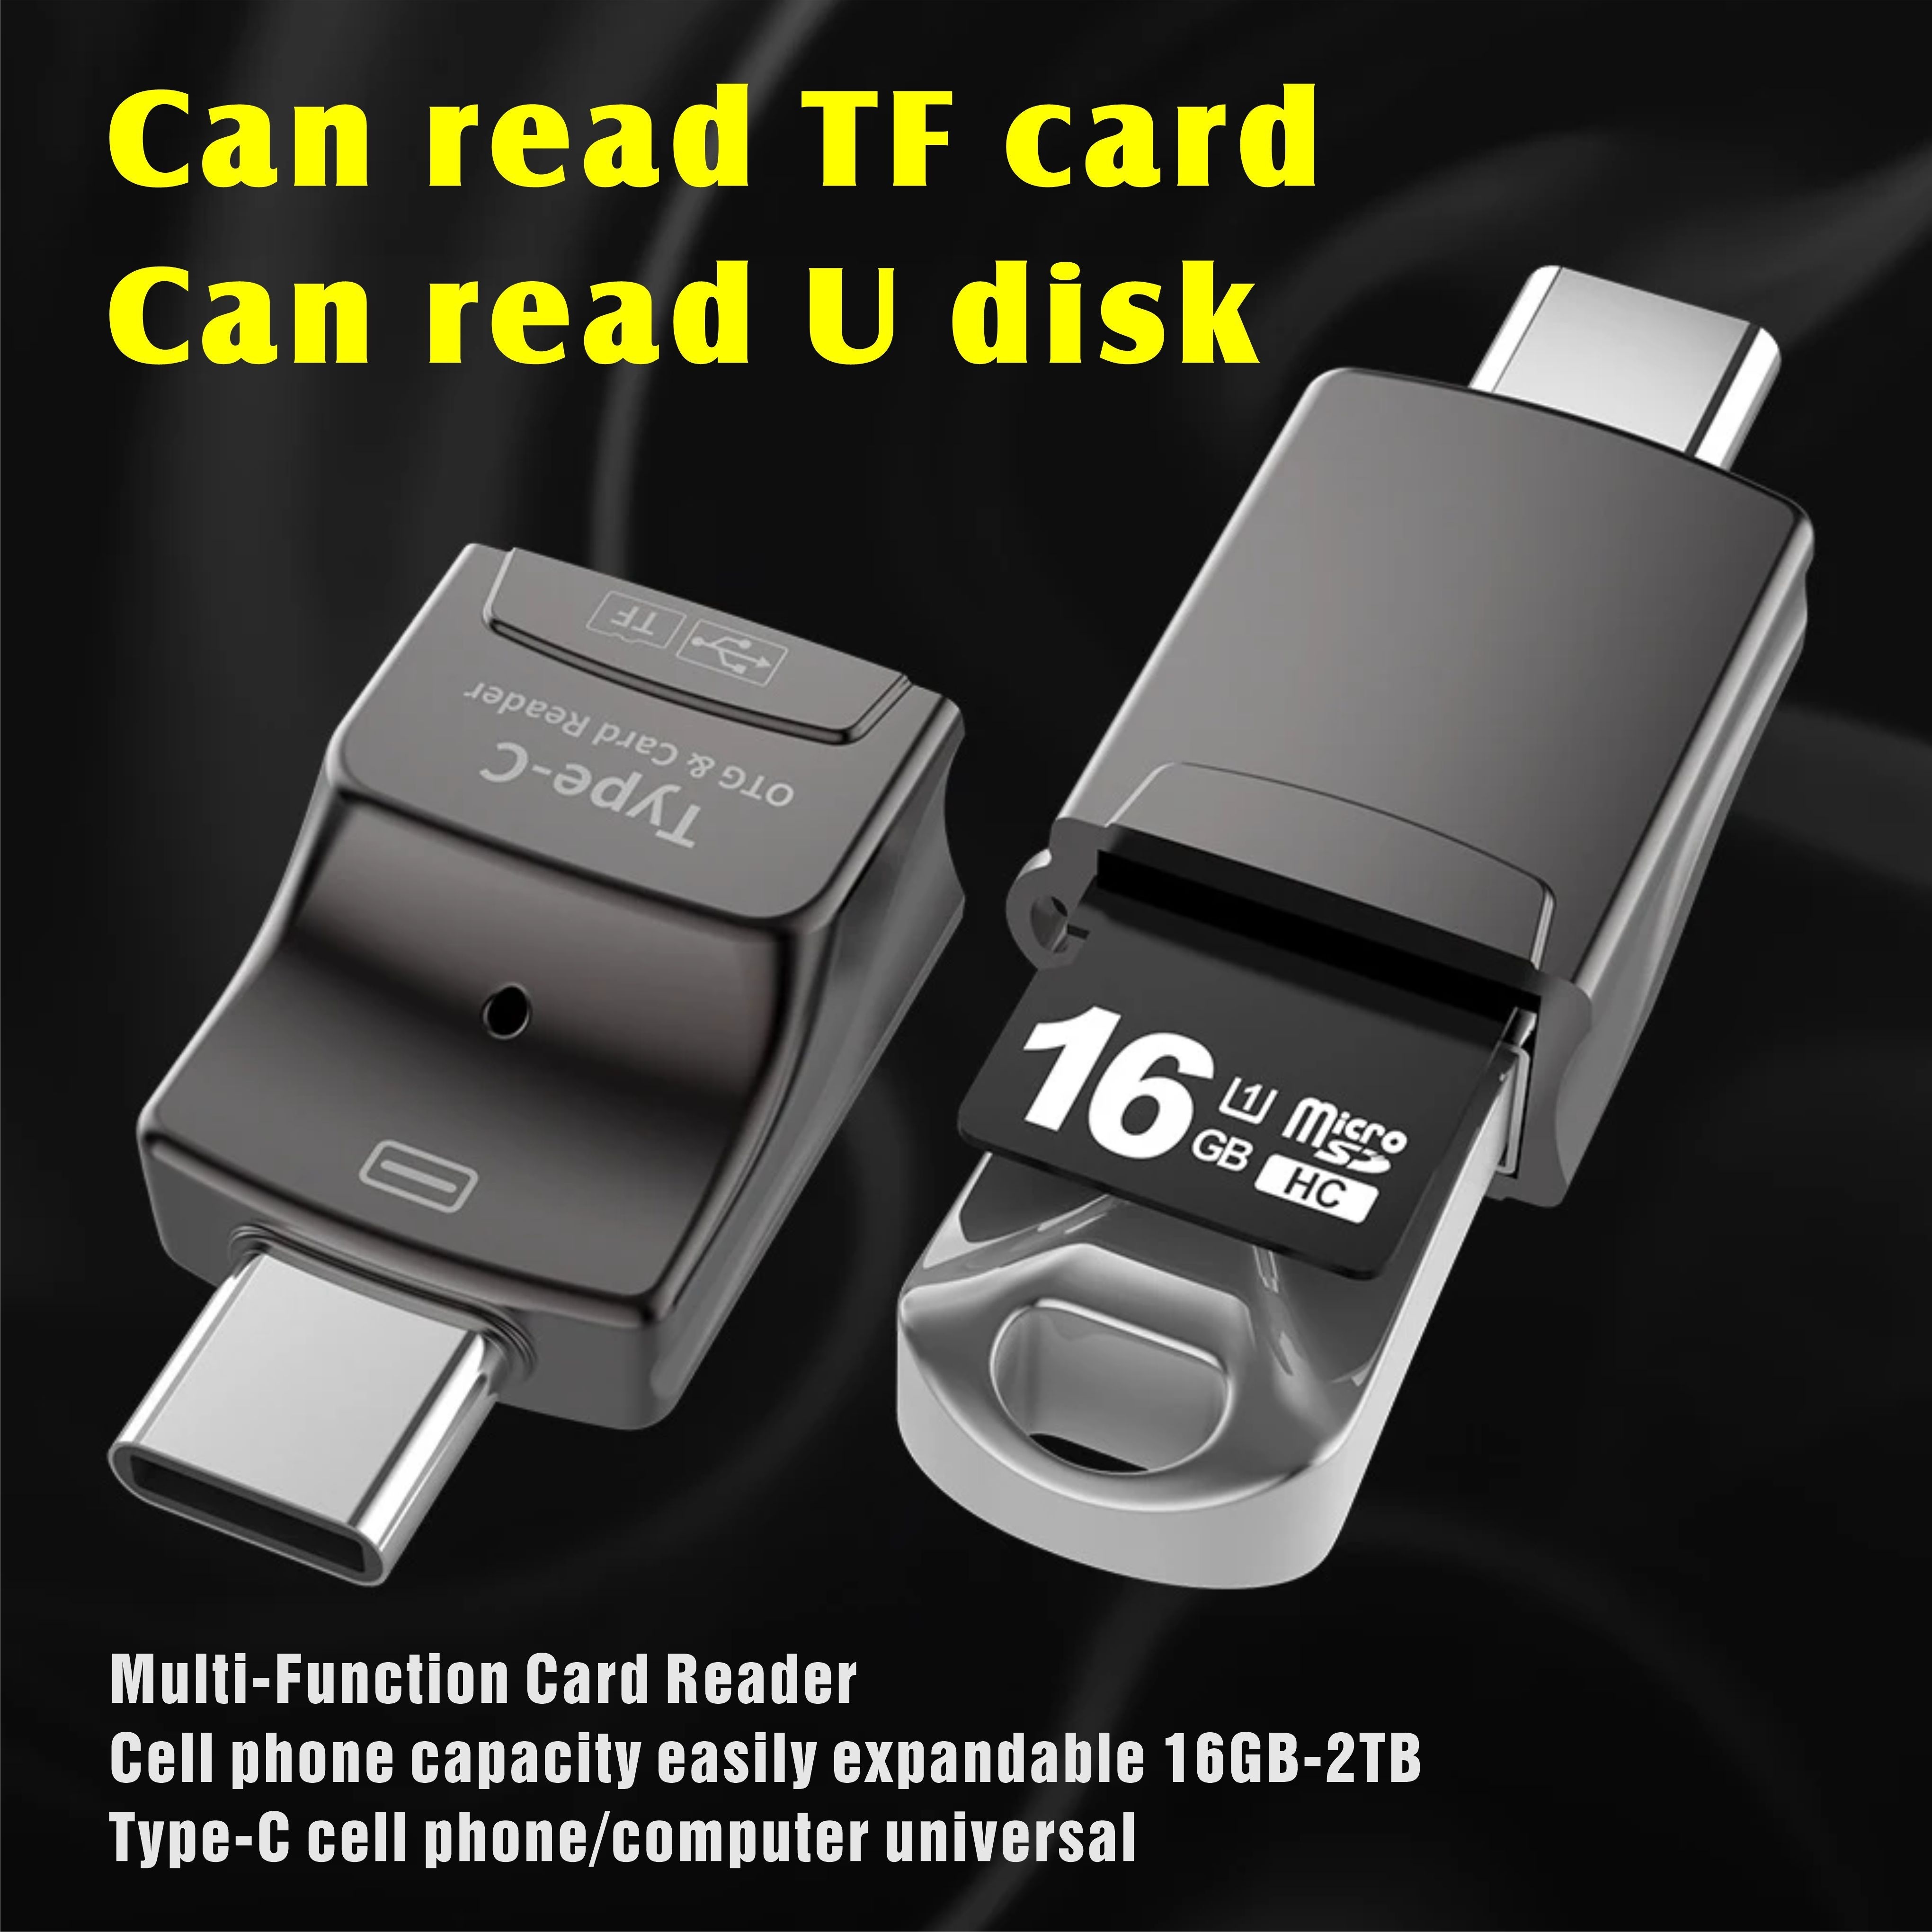 Carte SD - Micro SD & Clé USB - Le Zébu